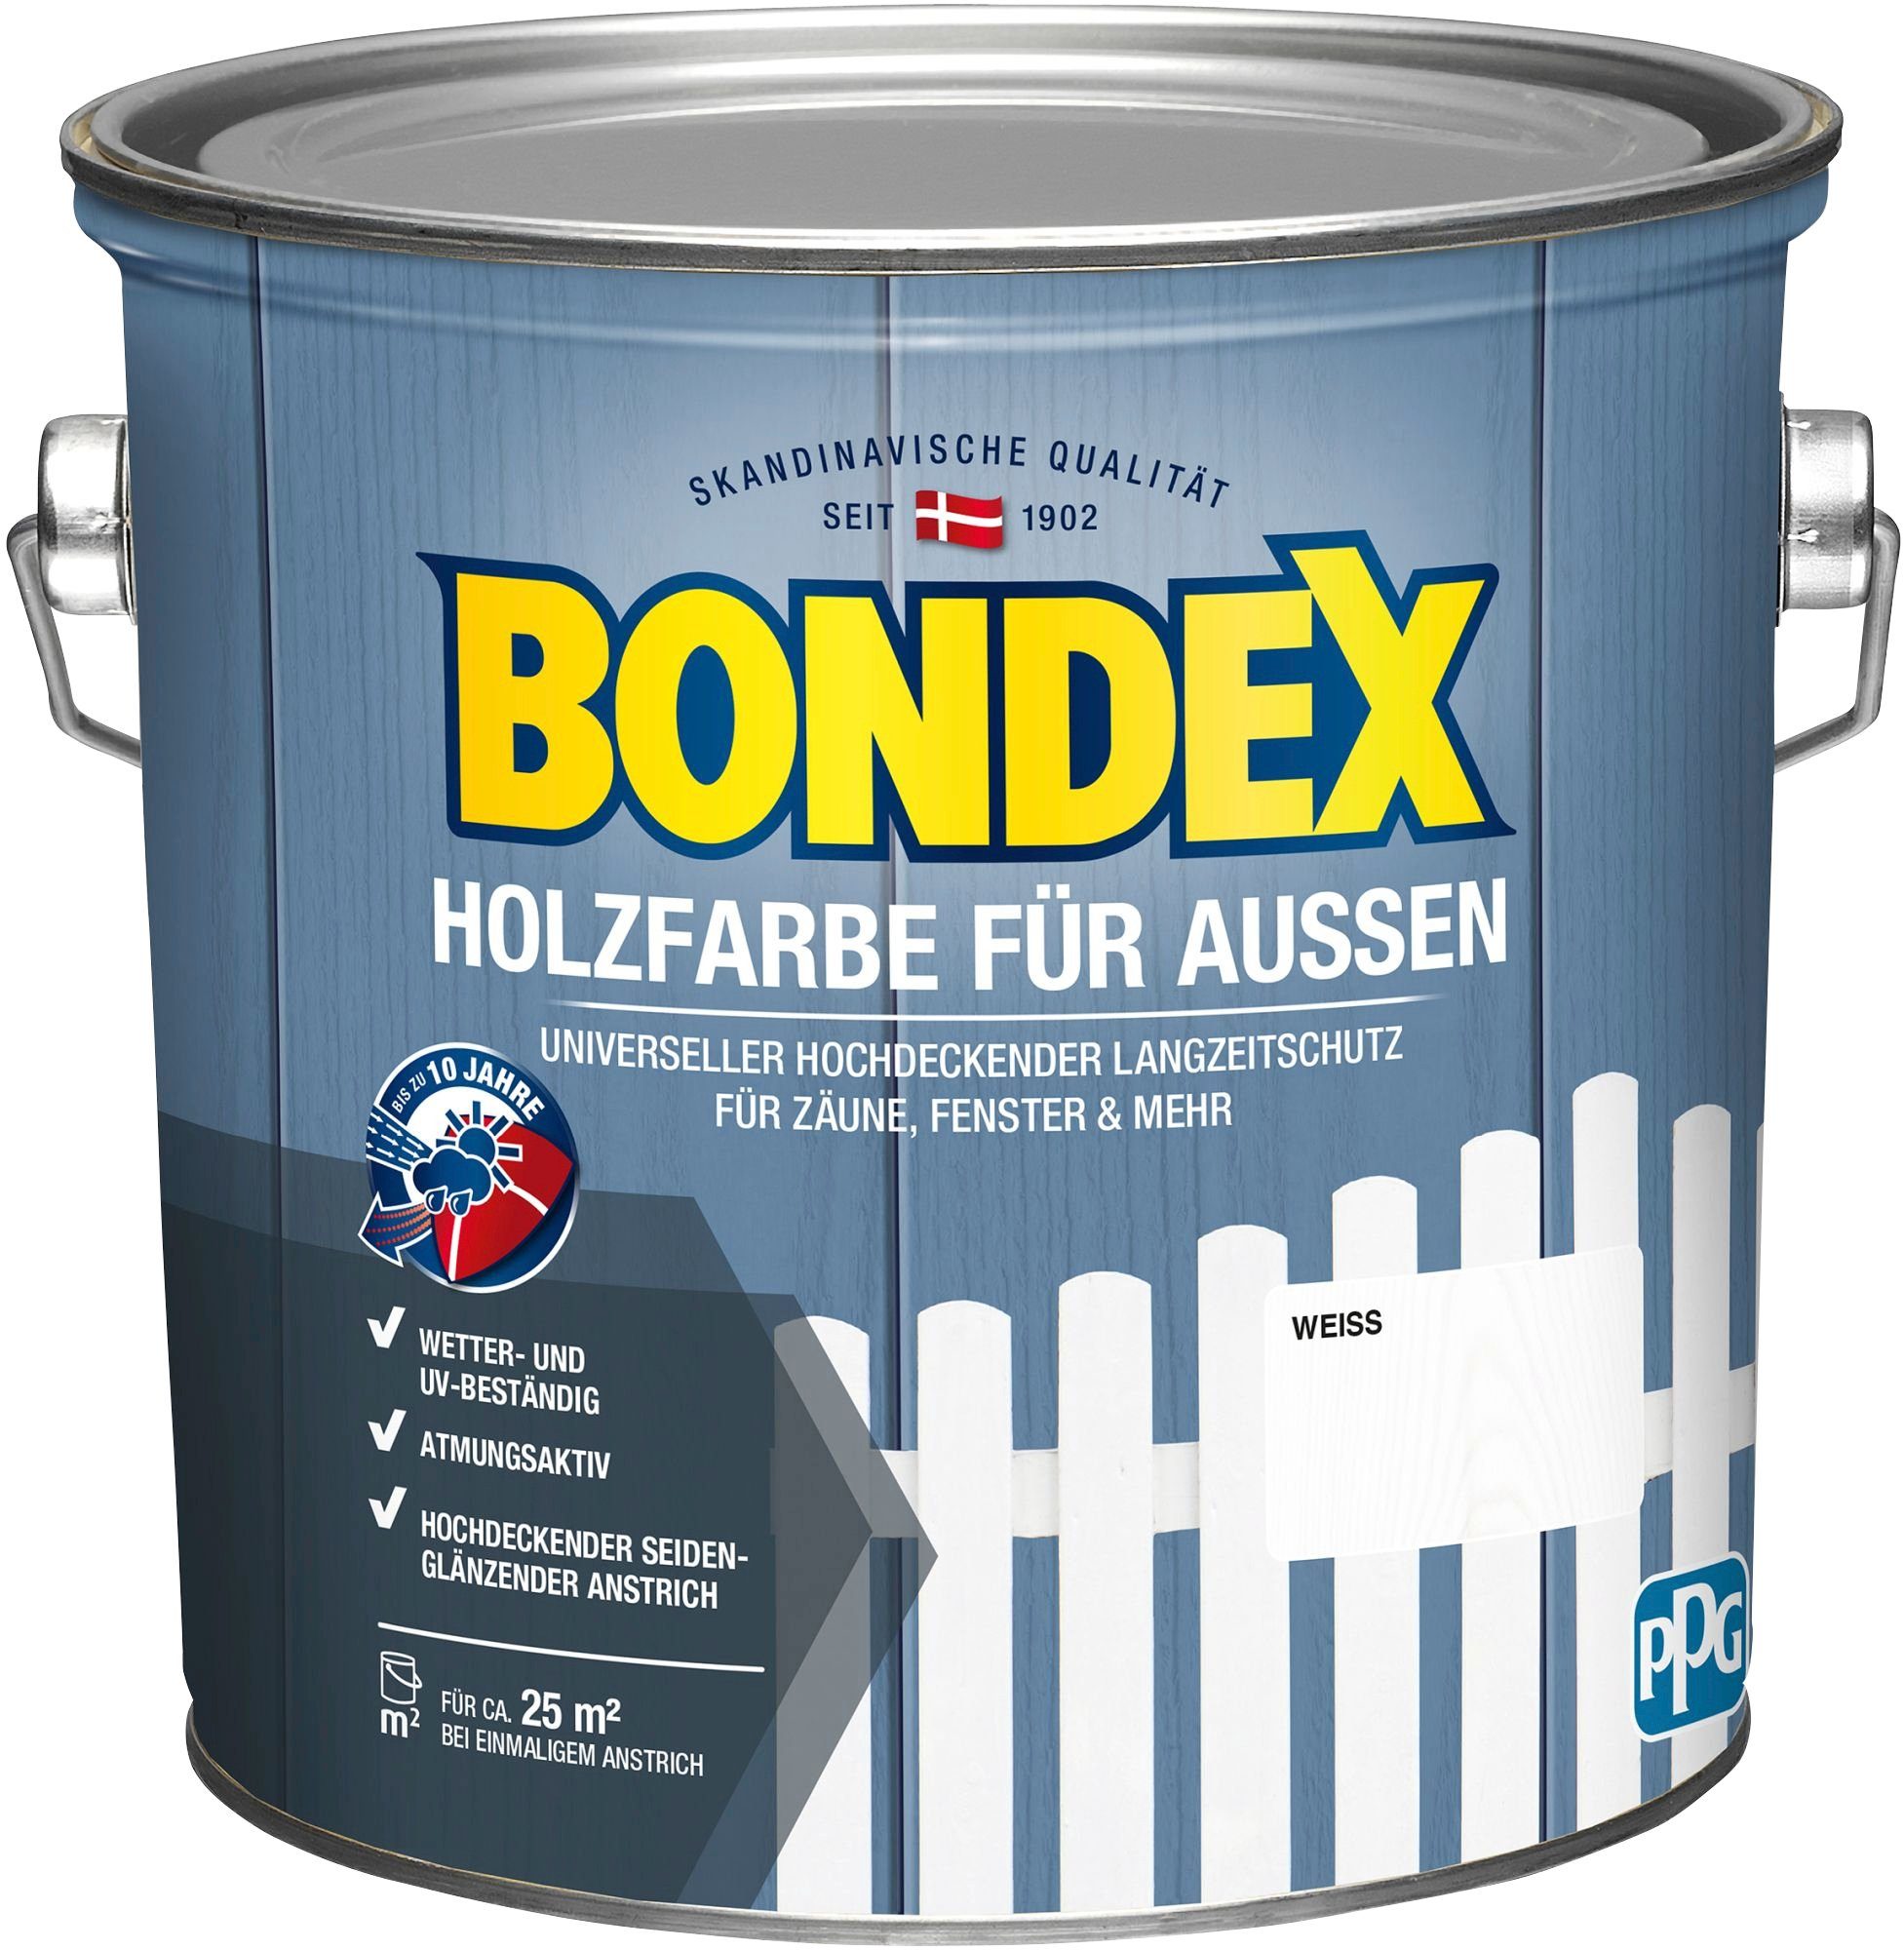 Bondex Wetterschutzfarbe HOLZFARBE FÜR AUSSEN, universeller hochdeckender Langzeit-Wetterschutz für Zäune & Fenster weiß